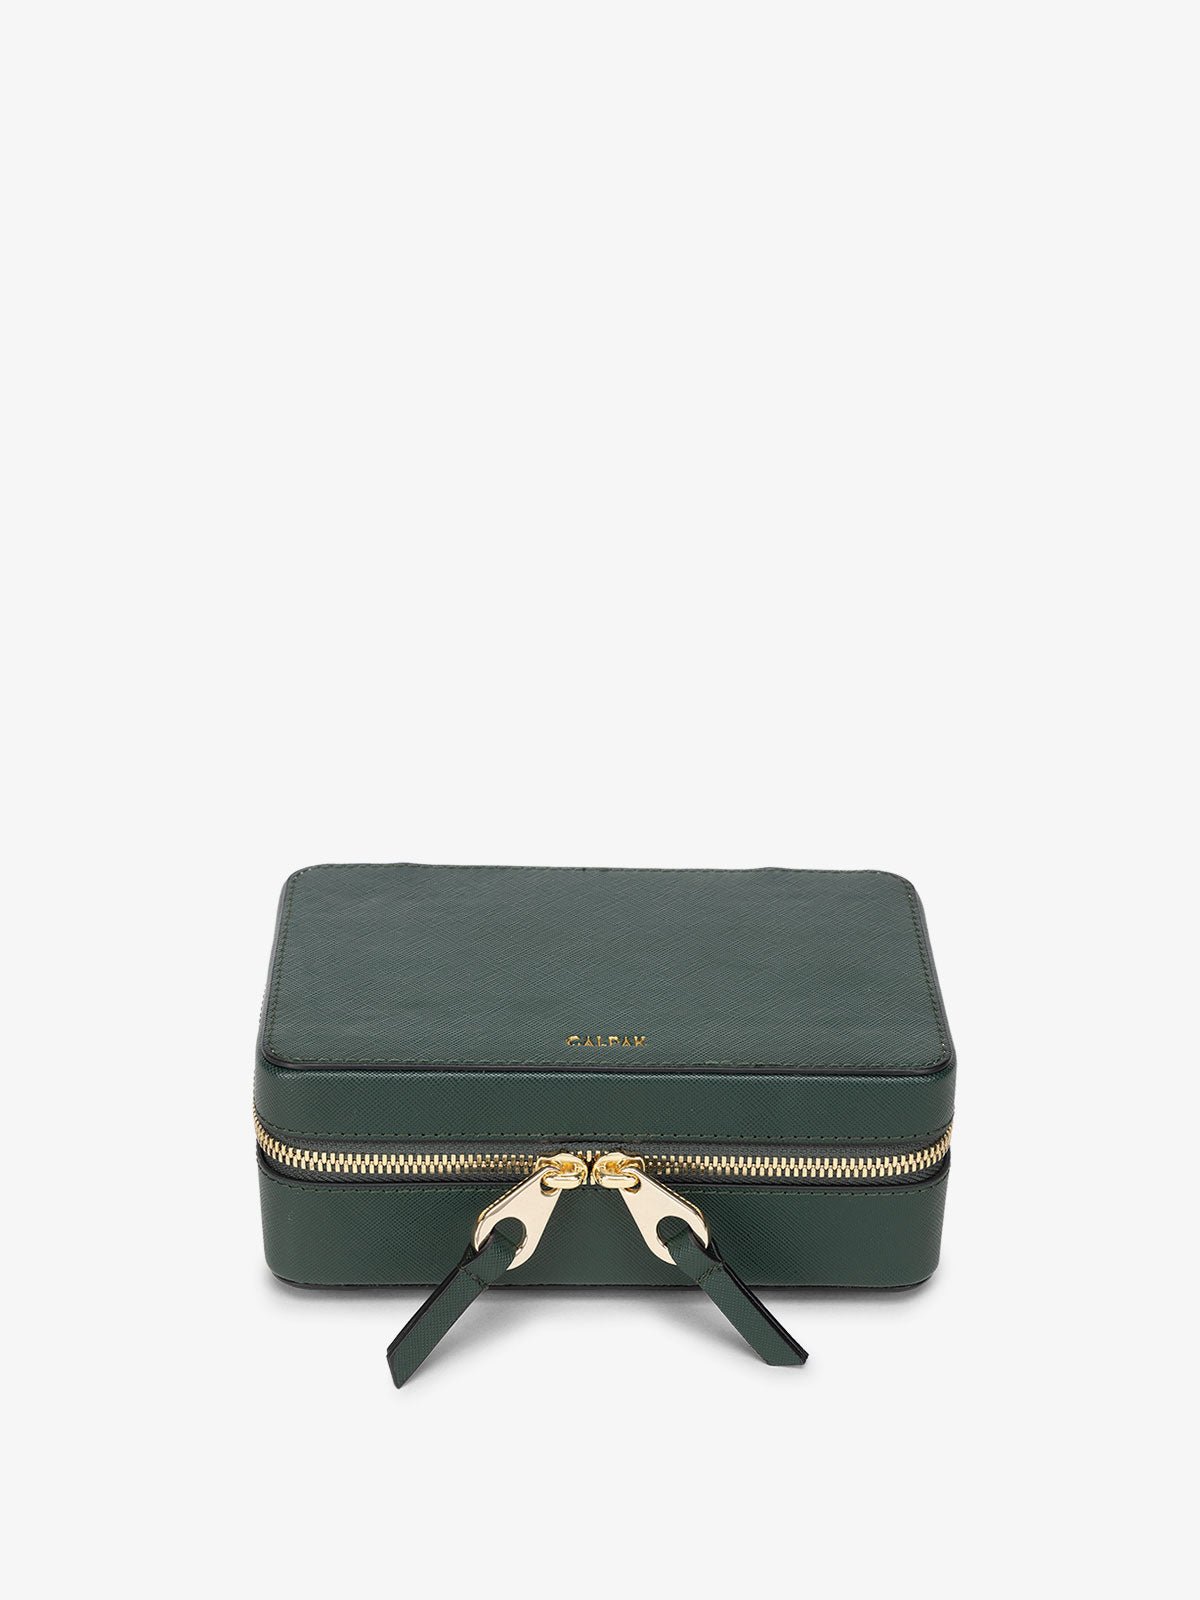 CALPAK zippered jewelry box in emerald